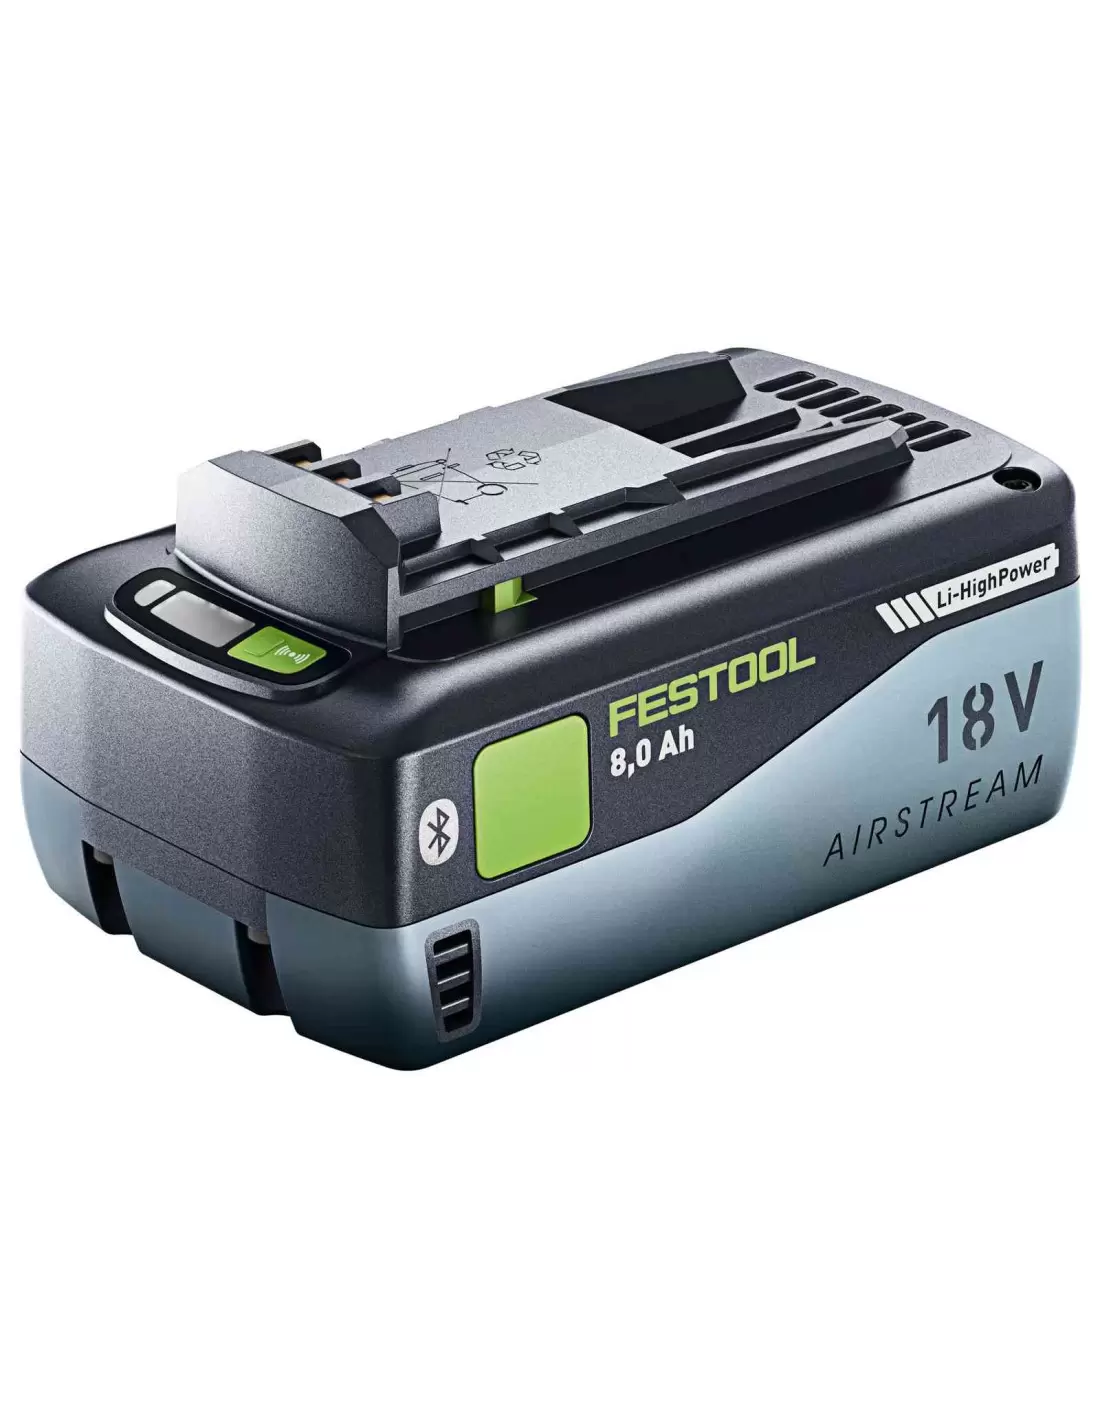 Batterie haute puissance BP 18 Li 8,0 HP-ASI, 577323 - Festool